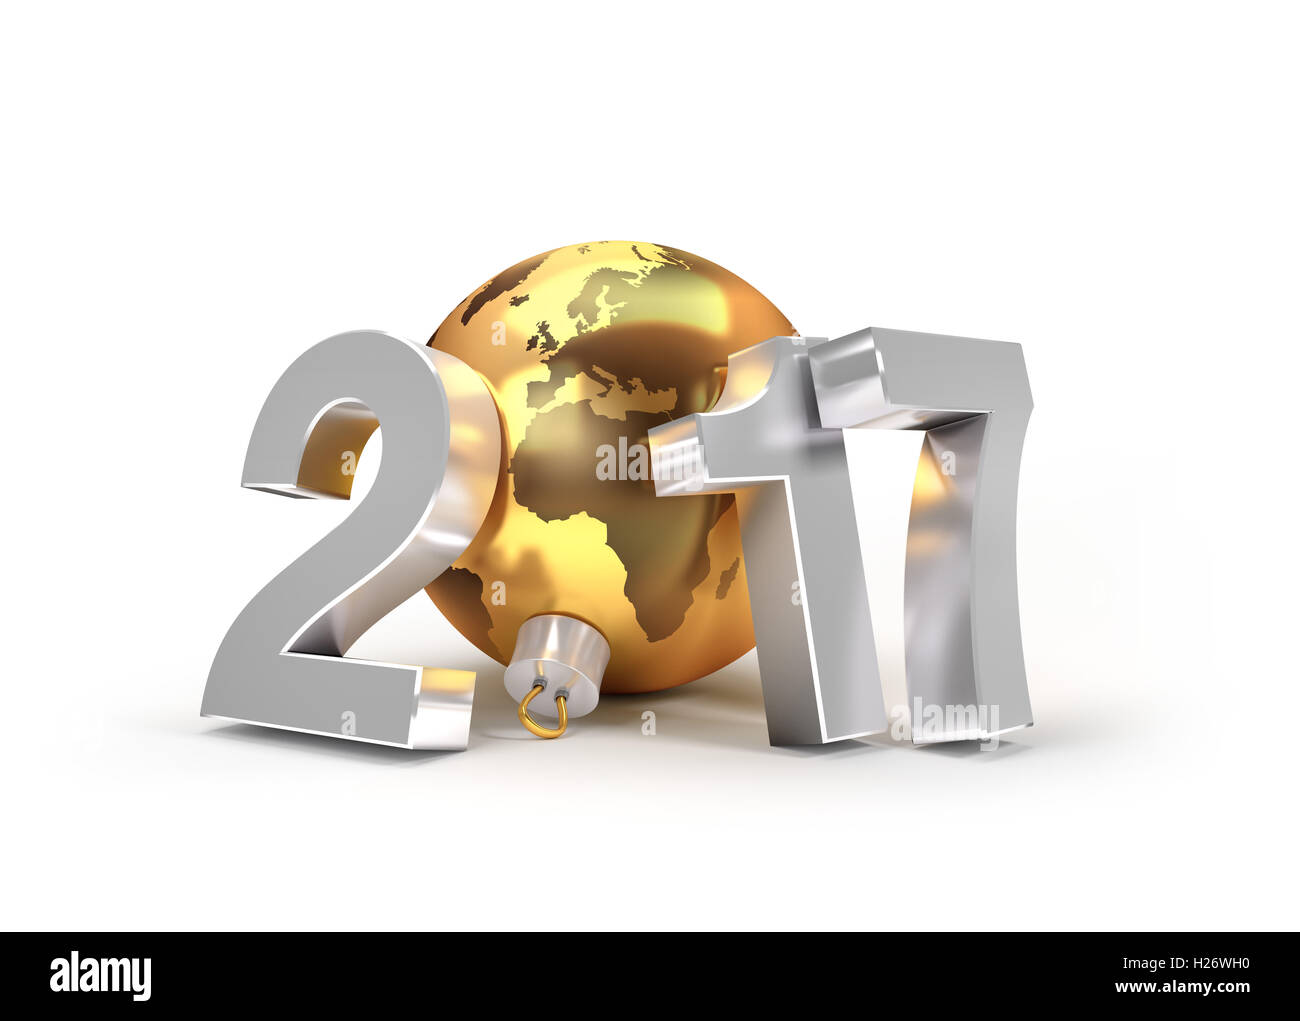 Neue Jahr 2017 Typ mit Planetenerde in eine goldene Weihnachtskugel - 3D-Illustration Stockfoto